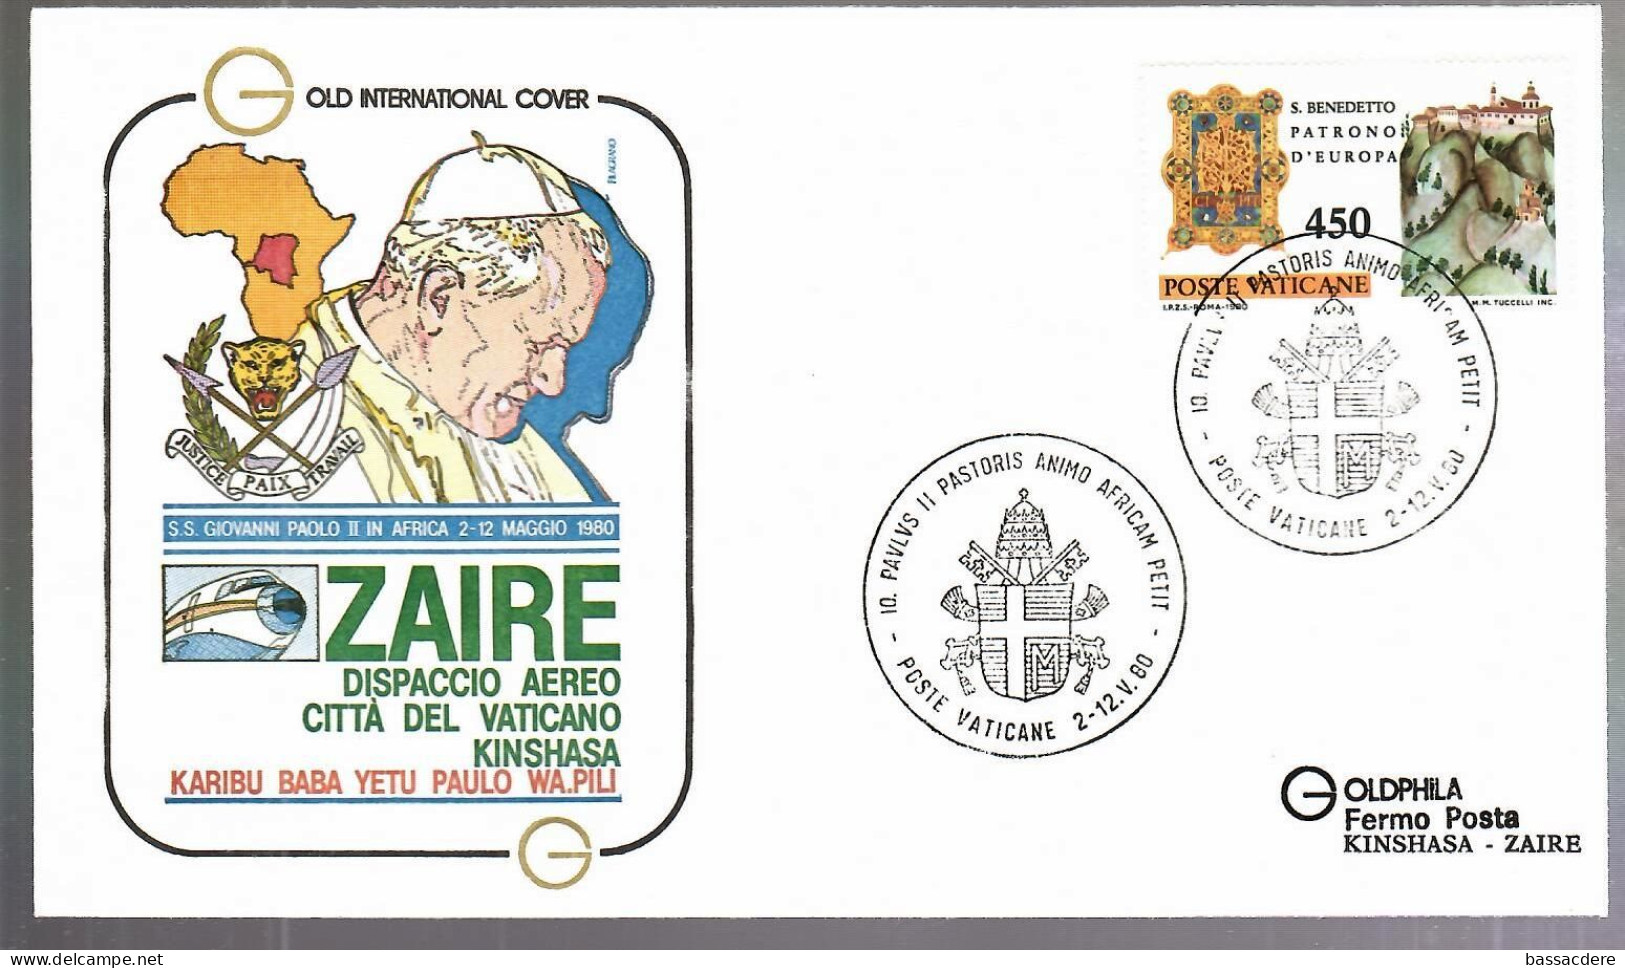 80179   21  enveloppes des voyages  du  Pape  JEAN  PAUL II